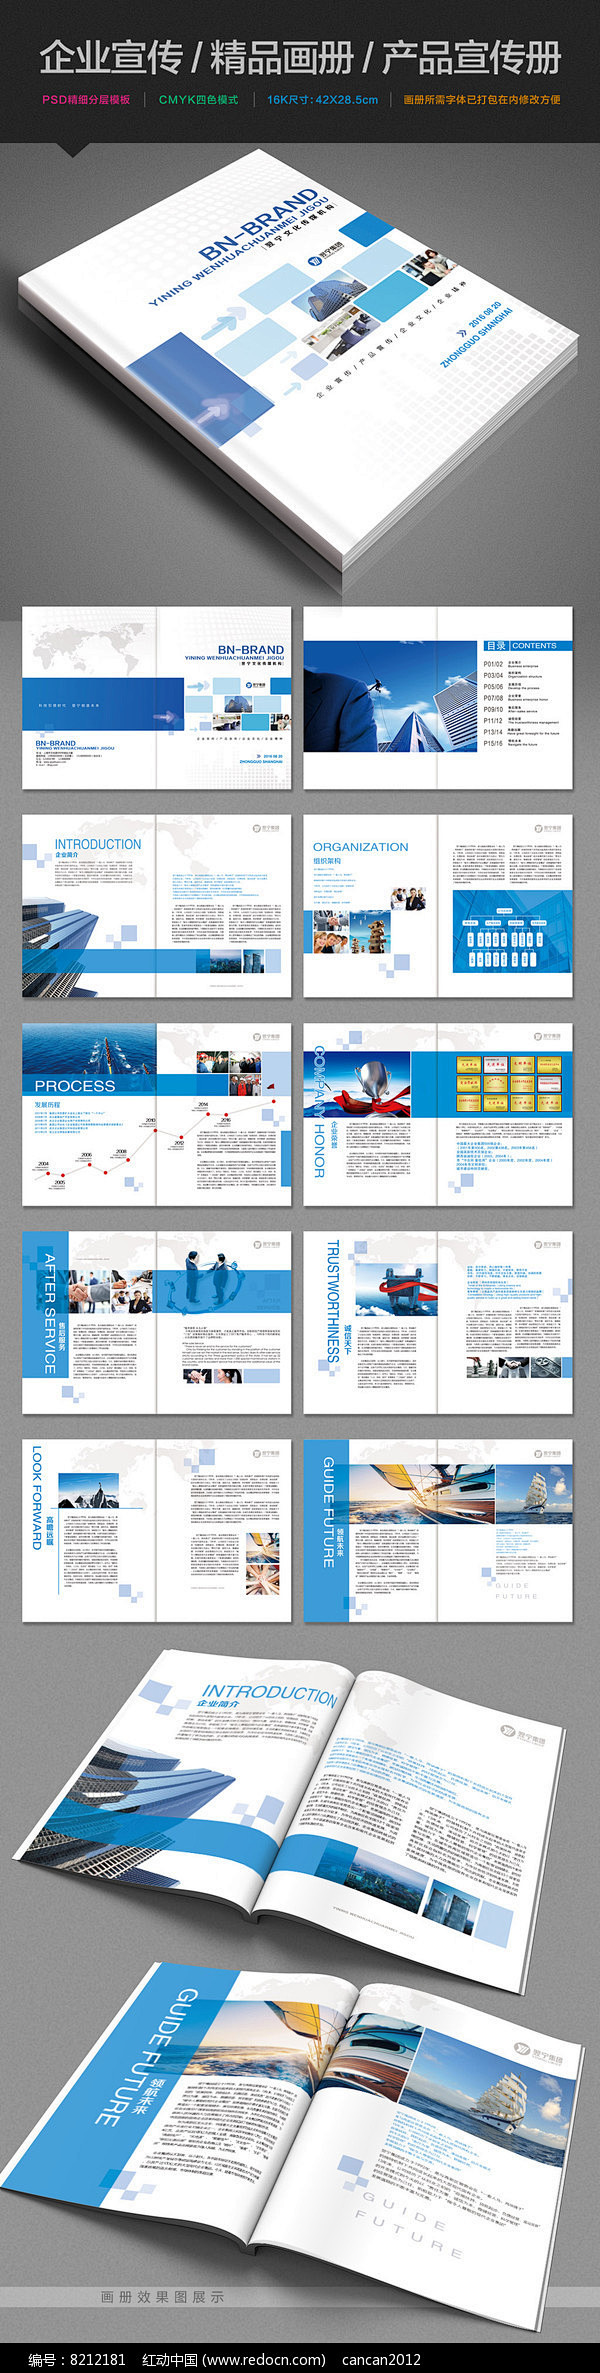 蓝色通用企业宣传画册设计PSD模板图片 ...